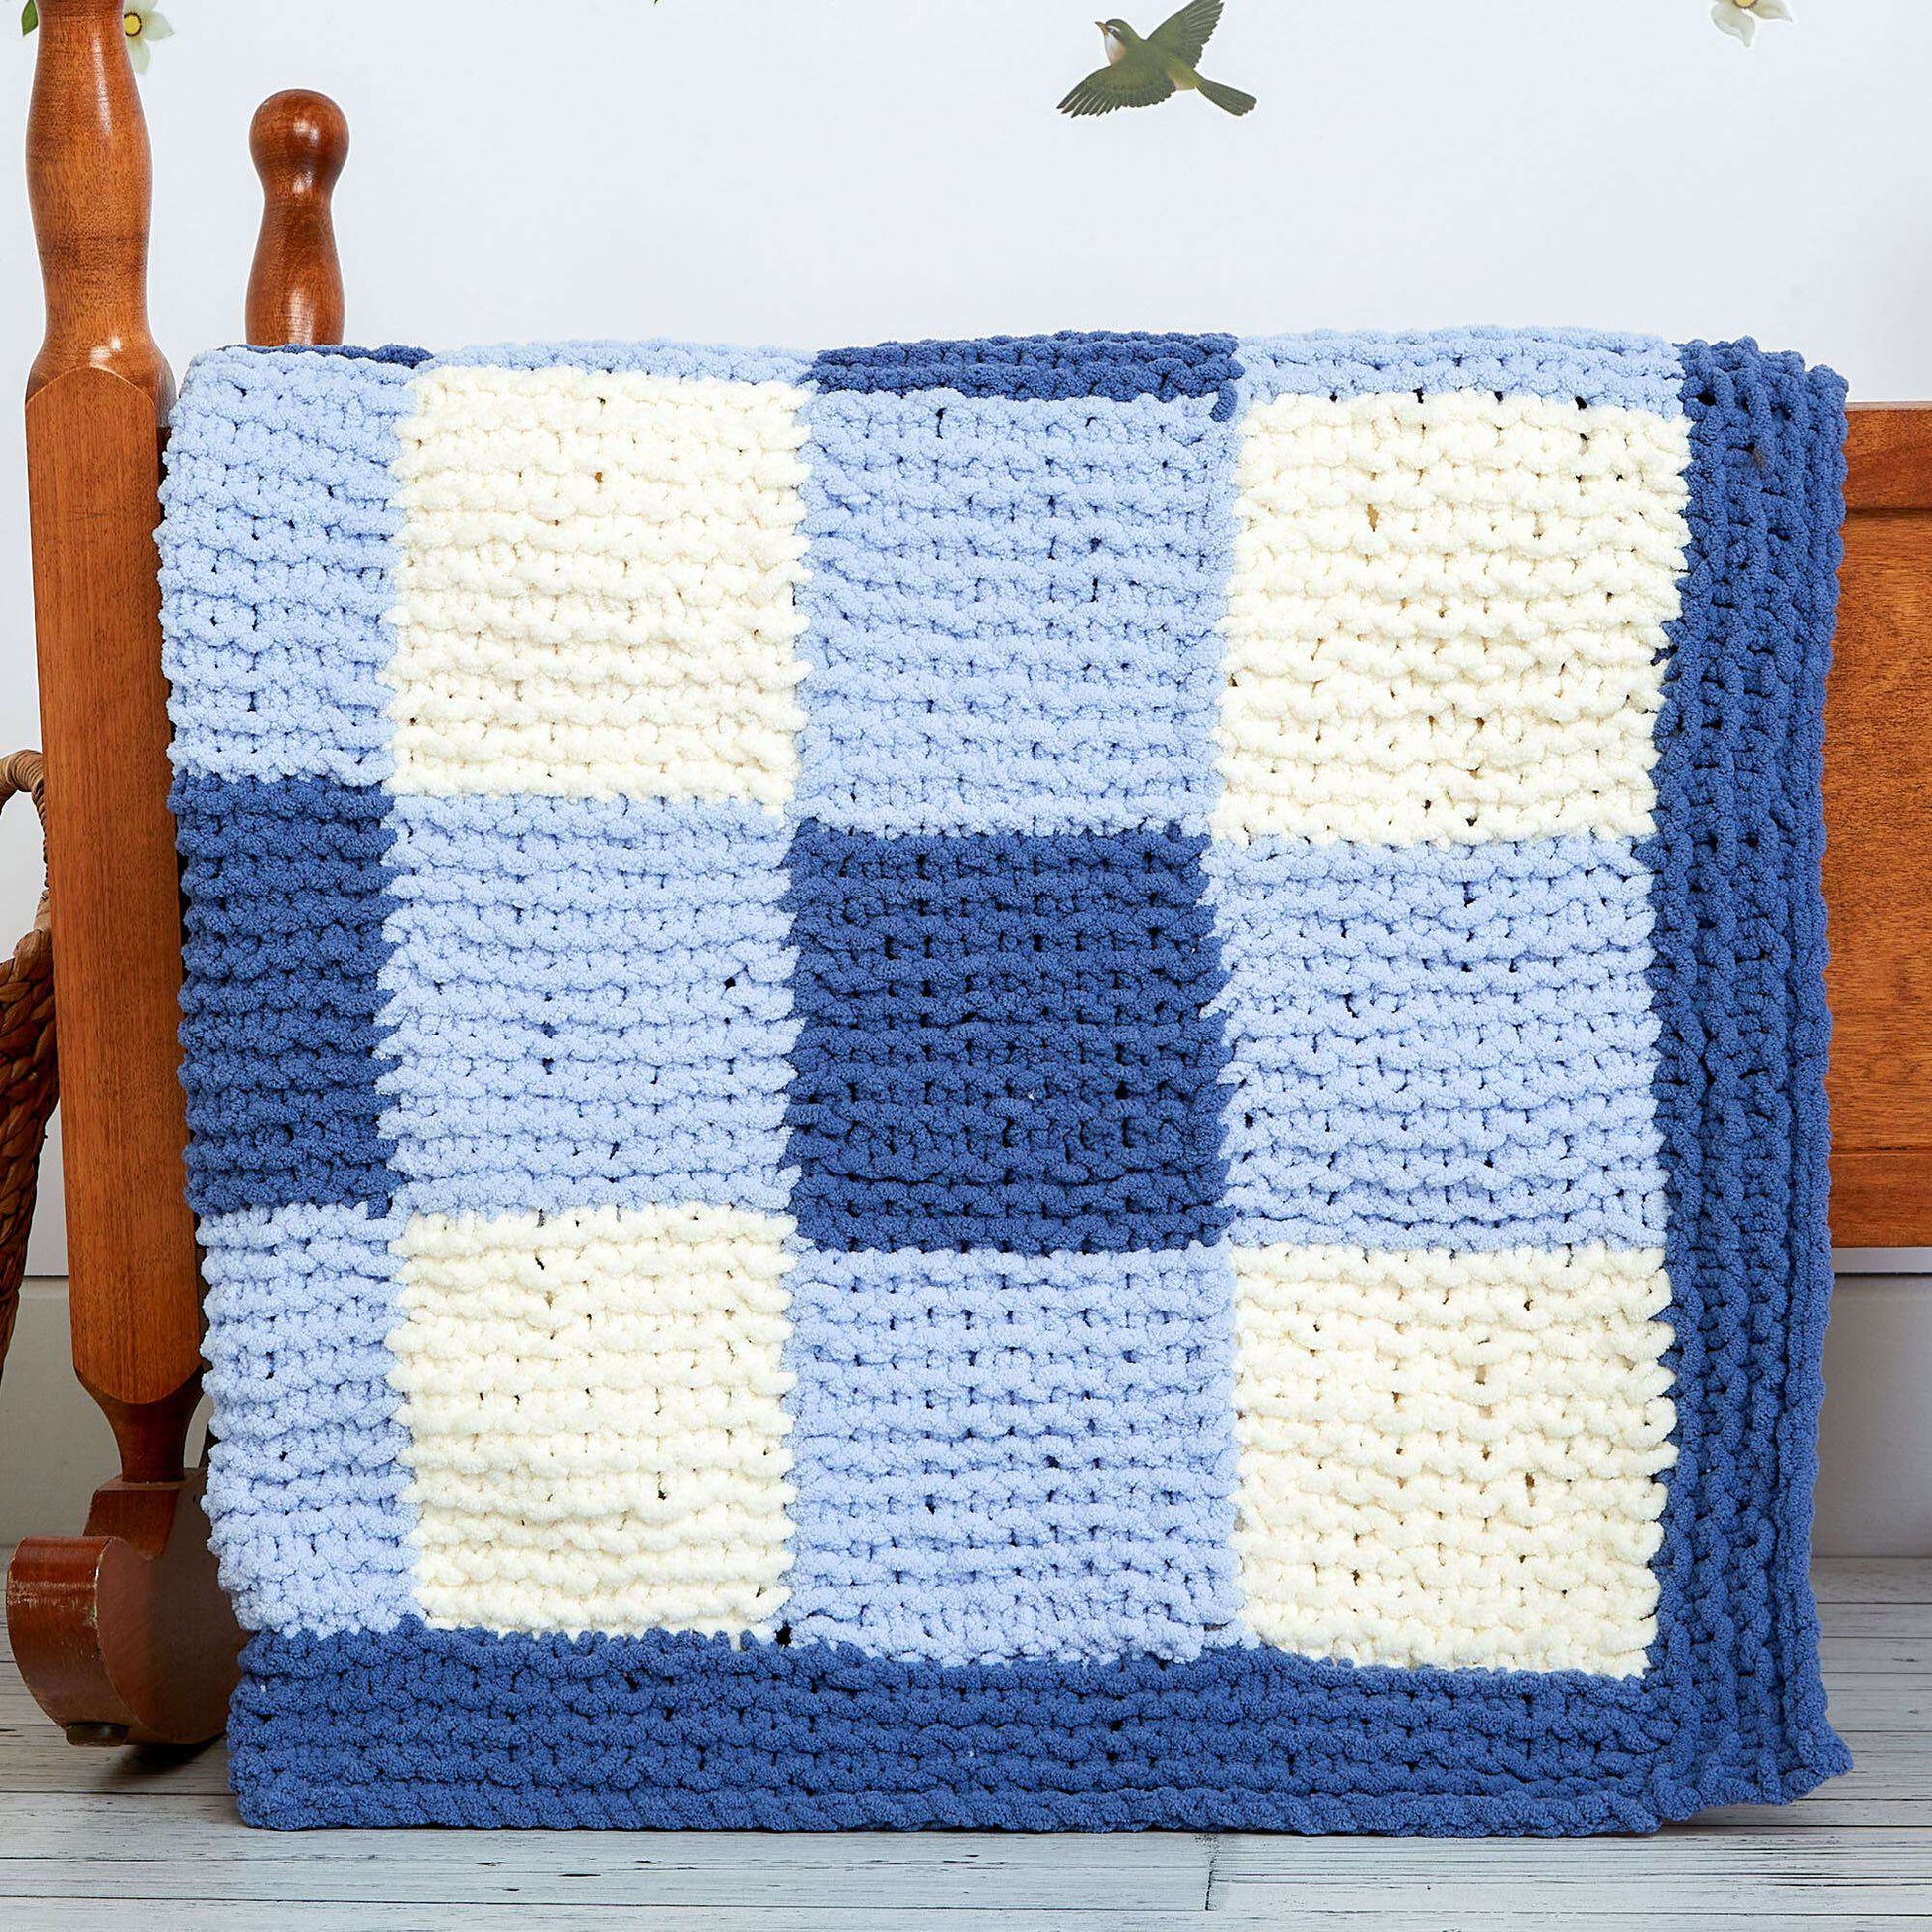 Bernat Baby Blanket Yarn (300g/10.5 oz), Baby Denim |Yarnspirations